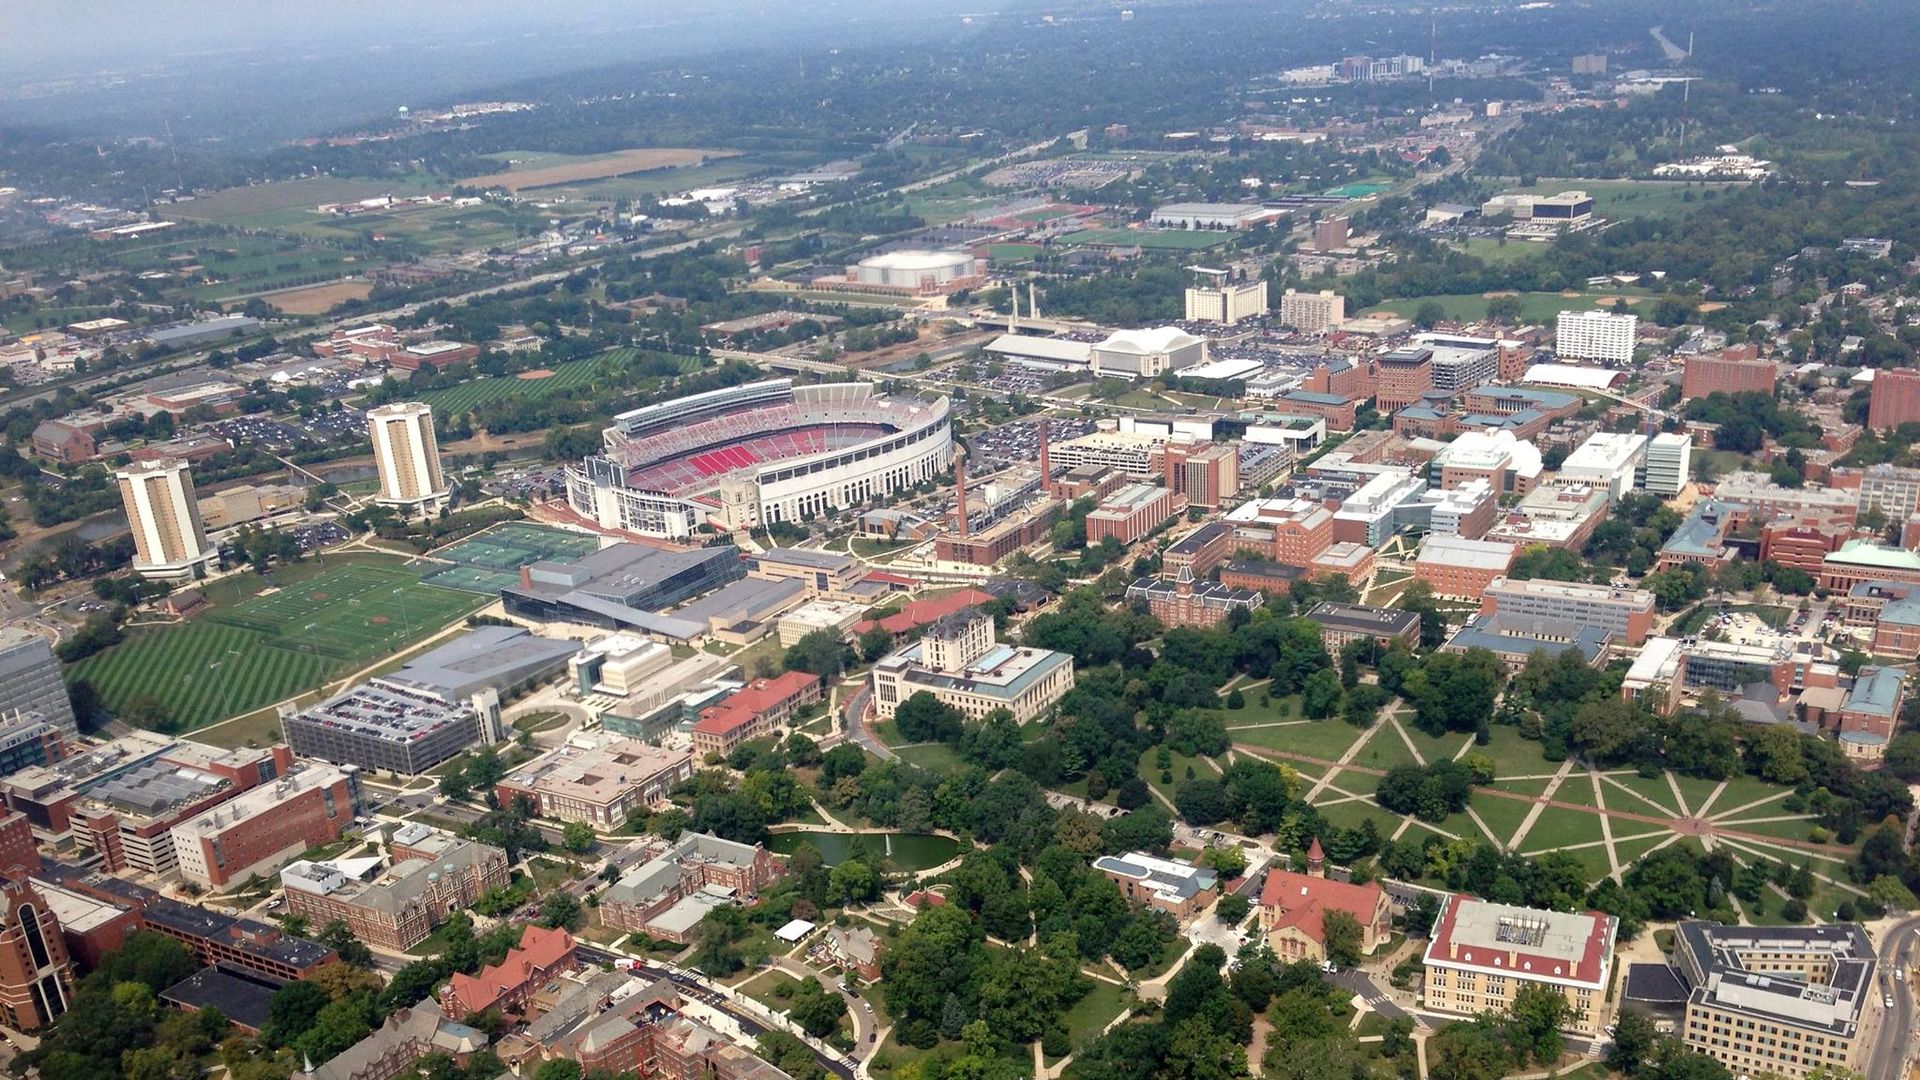 Ohio State University campus, aerial view. 